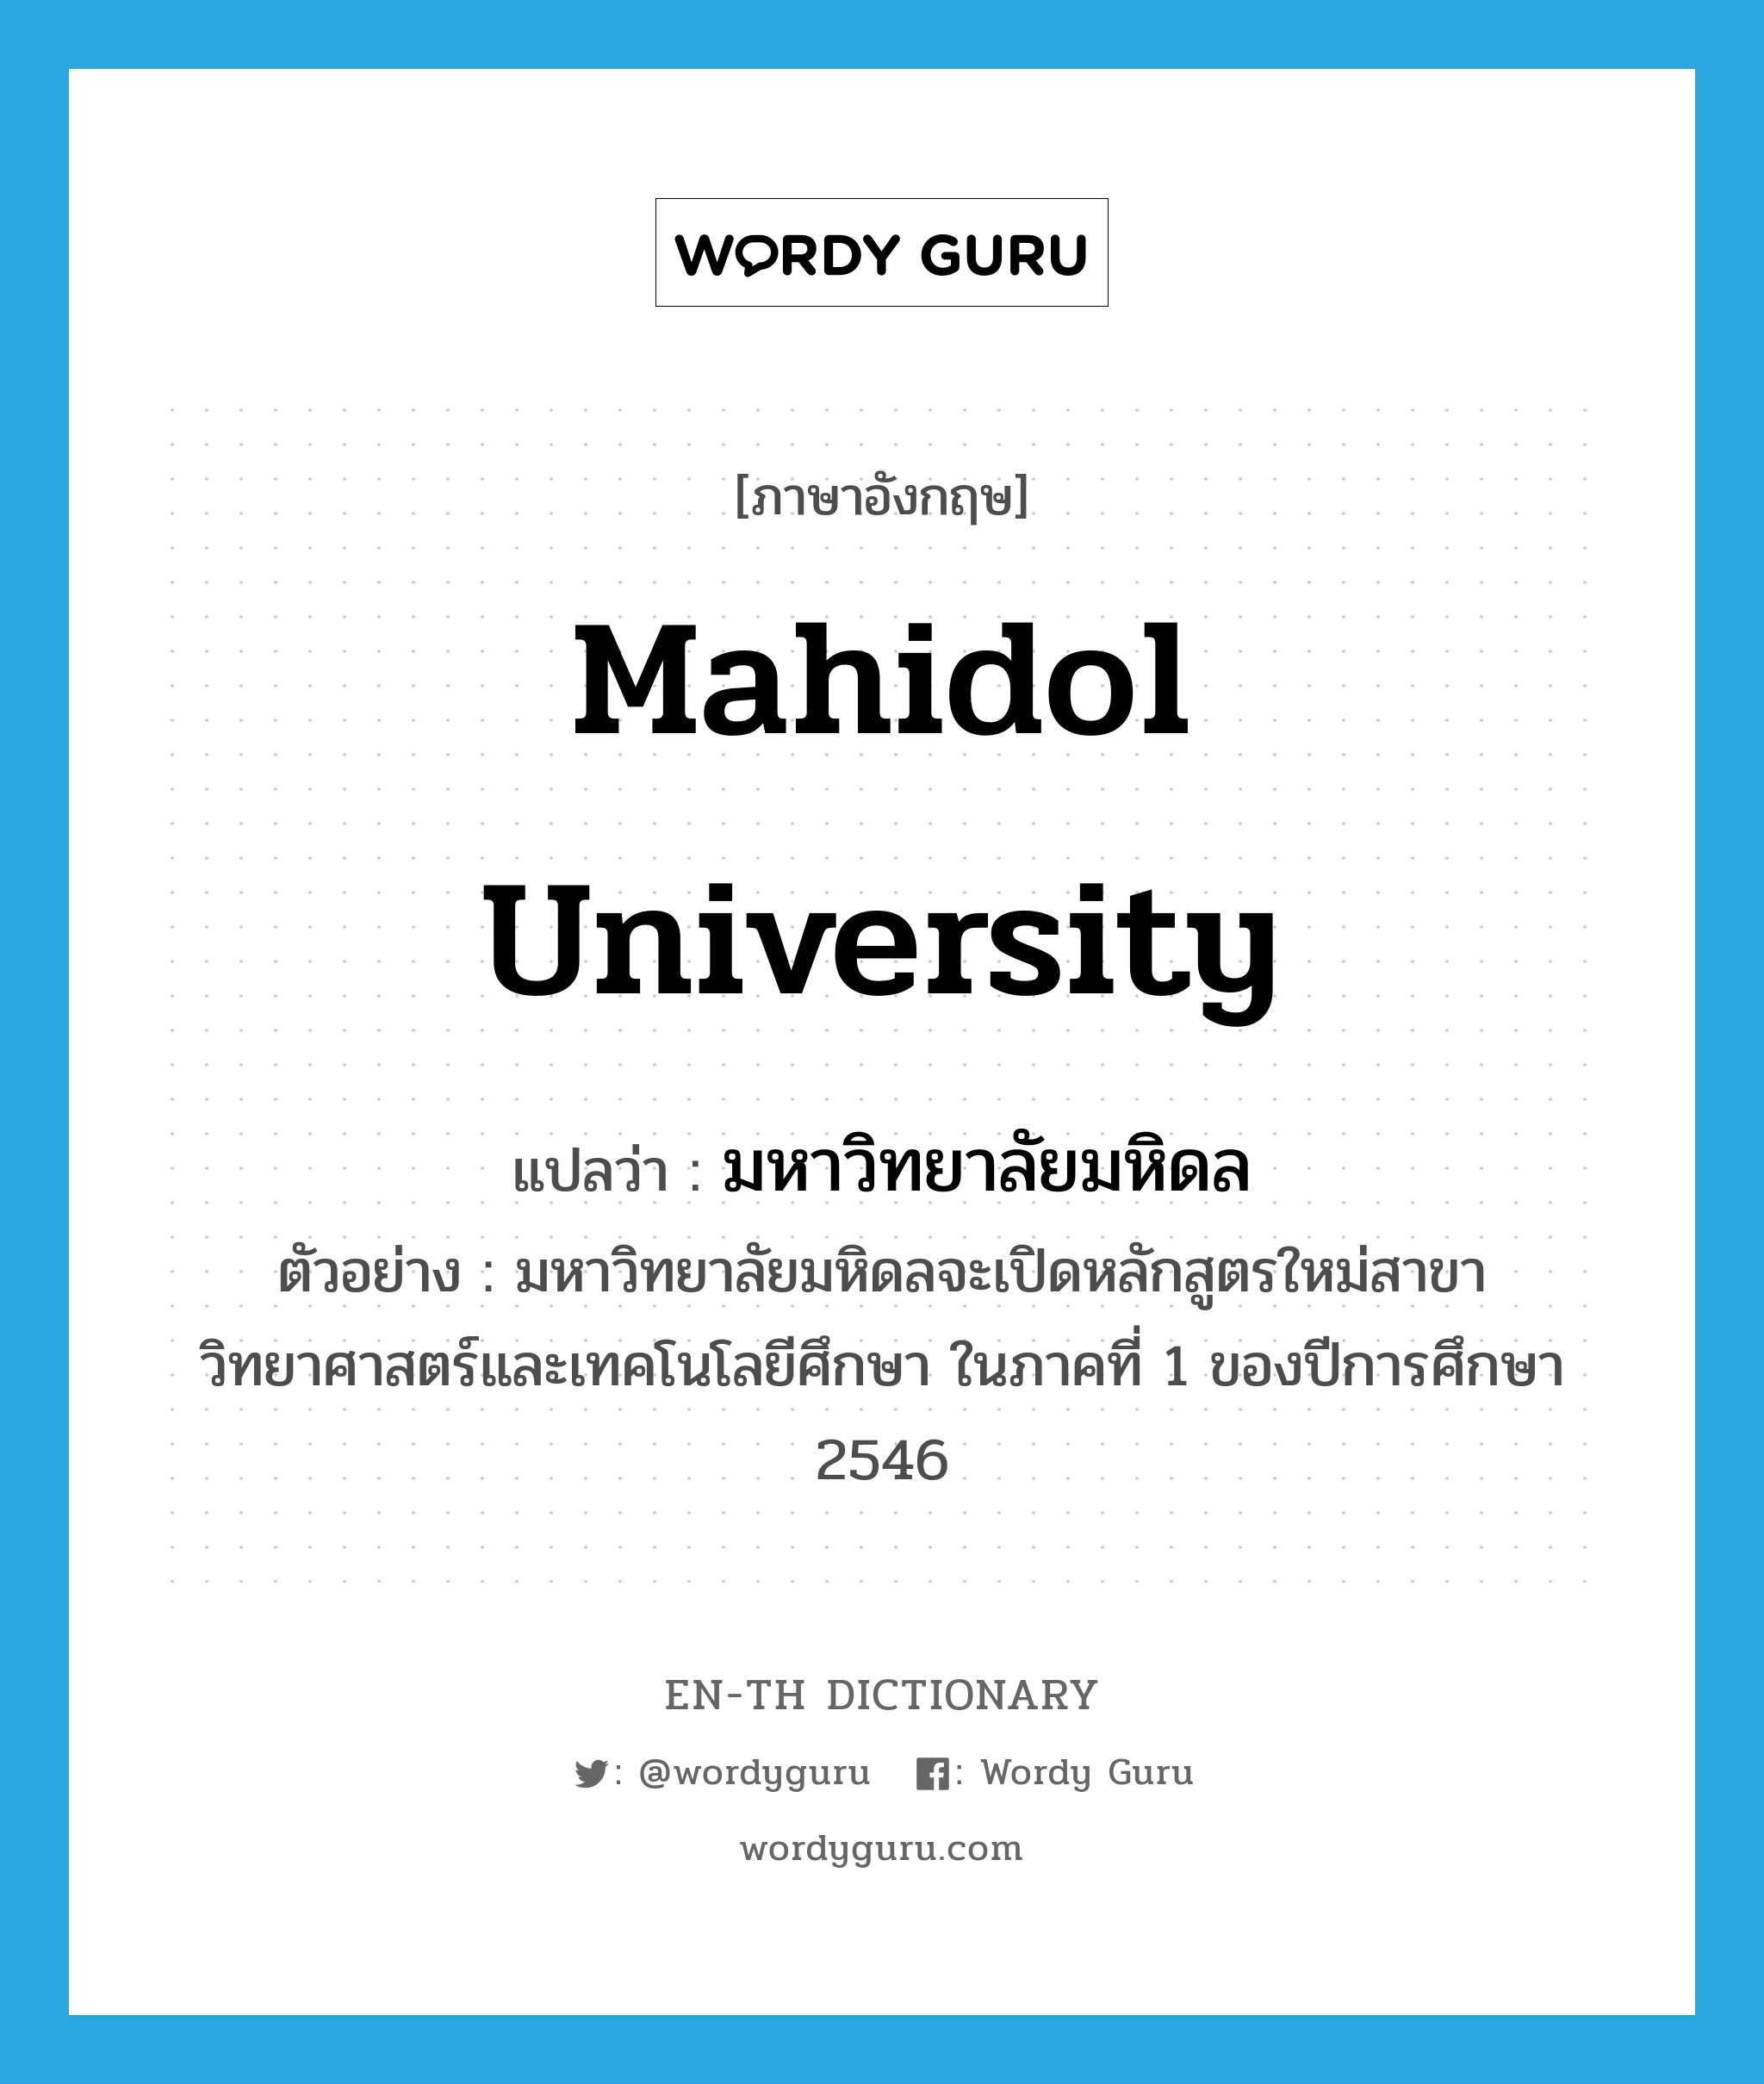 Mahidol University แปลว่า?, คำศัพท์ภาษาอังกฤษ Mahidol University แปลว่า มหาวิทยาลัยมหิดล ประเภท N ตัวอย่าง มหาวิทยาลัยมหิดลจะเปิดหลักสูตรใหม่สาขาวิทยาศาสตร์และเทคโนโลยีศึกษา ในภาคที่ 1 ของปีการศึกษา 2546 หมวด N